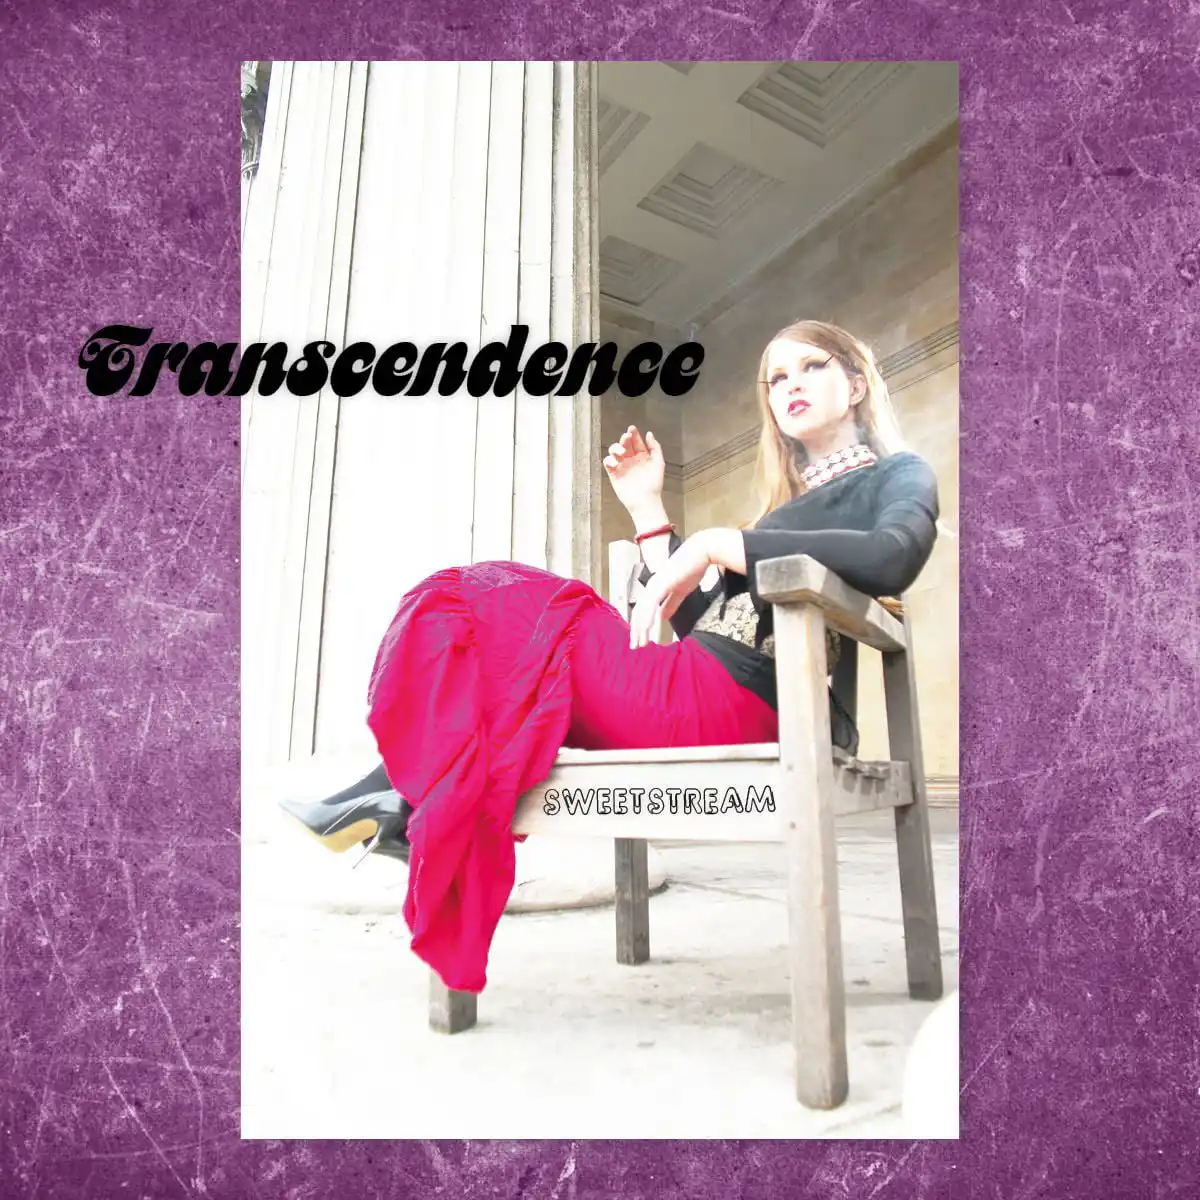 Sweetstream - Transcendence - Cover Art